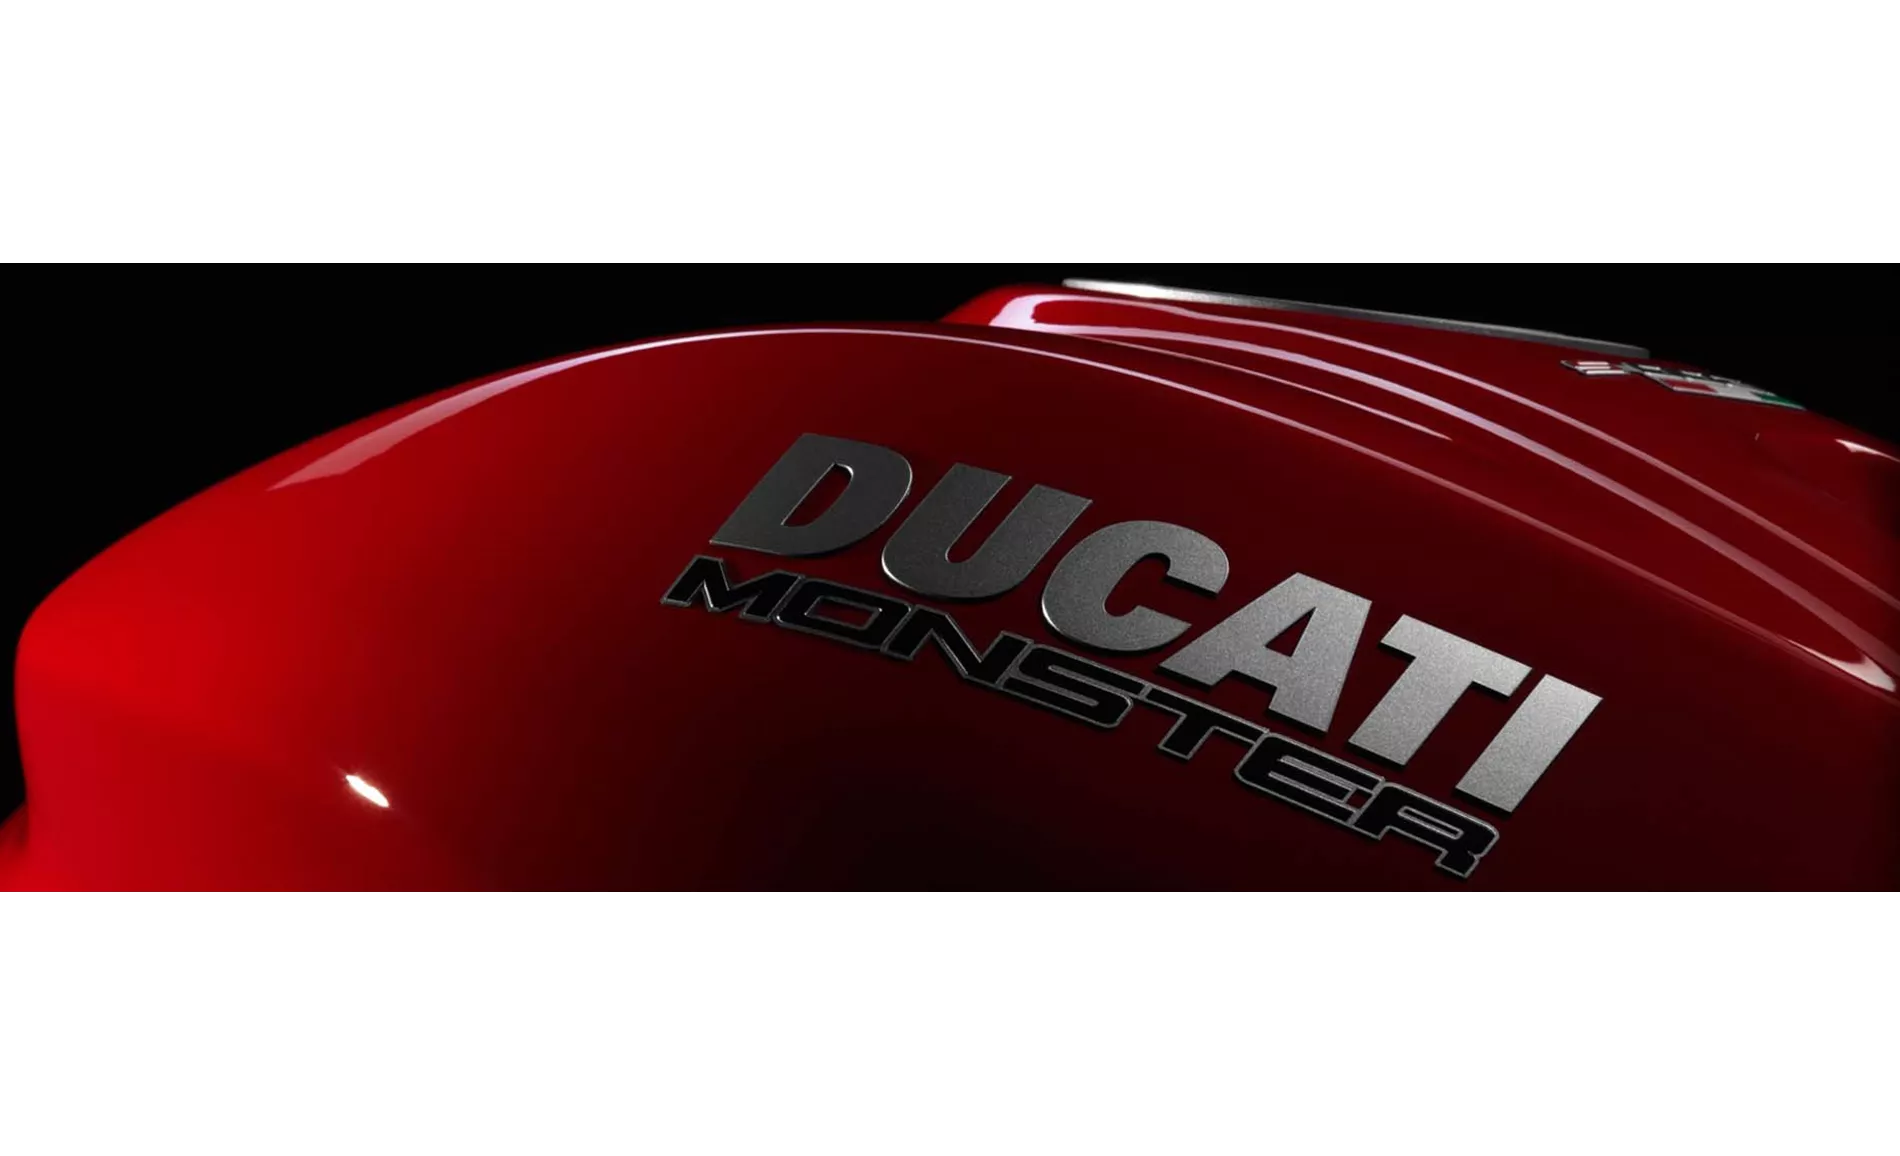 Ducati Monster 1200 S 2016